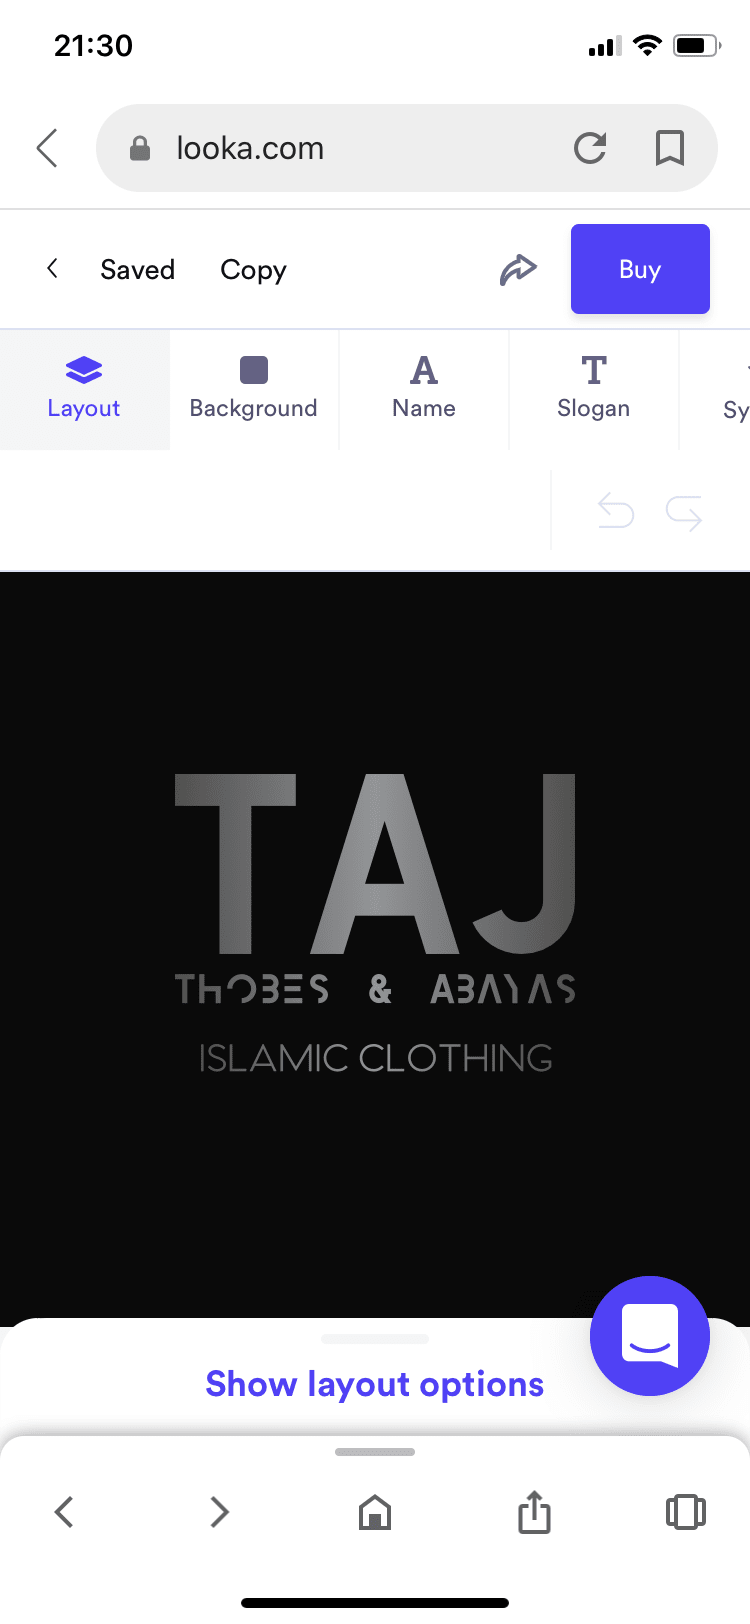 Tajthobes And Abayas